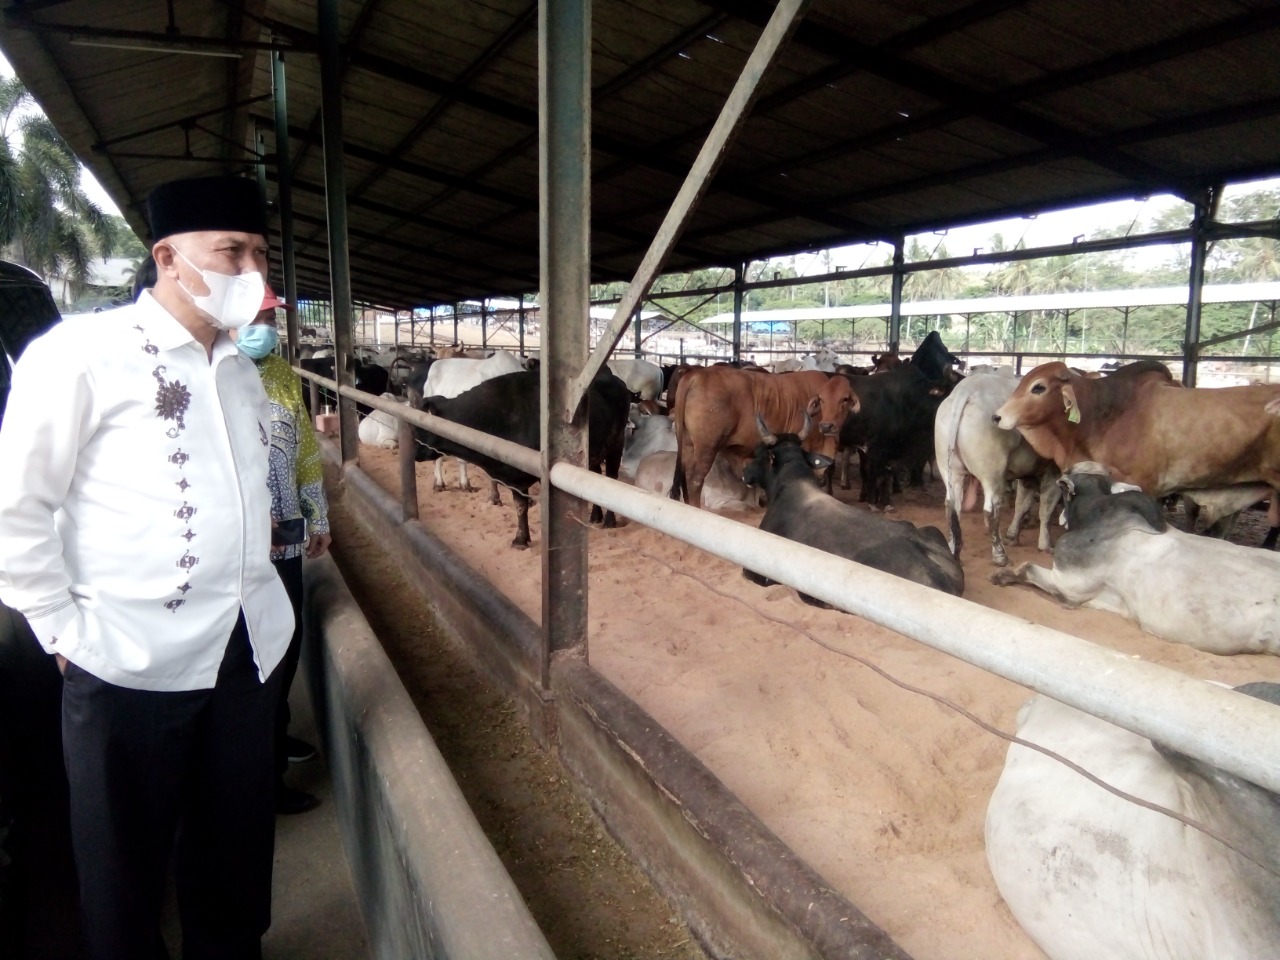 Gubernur Sumbar, Mahyeldi, meninjau lokasi peternakan sapi PT. Juang Jaya Abdi Alam, desa Koto Dalam, kecamatan Sidomulyo, kabupaten Lampung Selatan, Jumat (11/6/2021). 